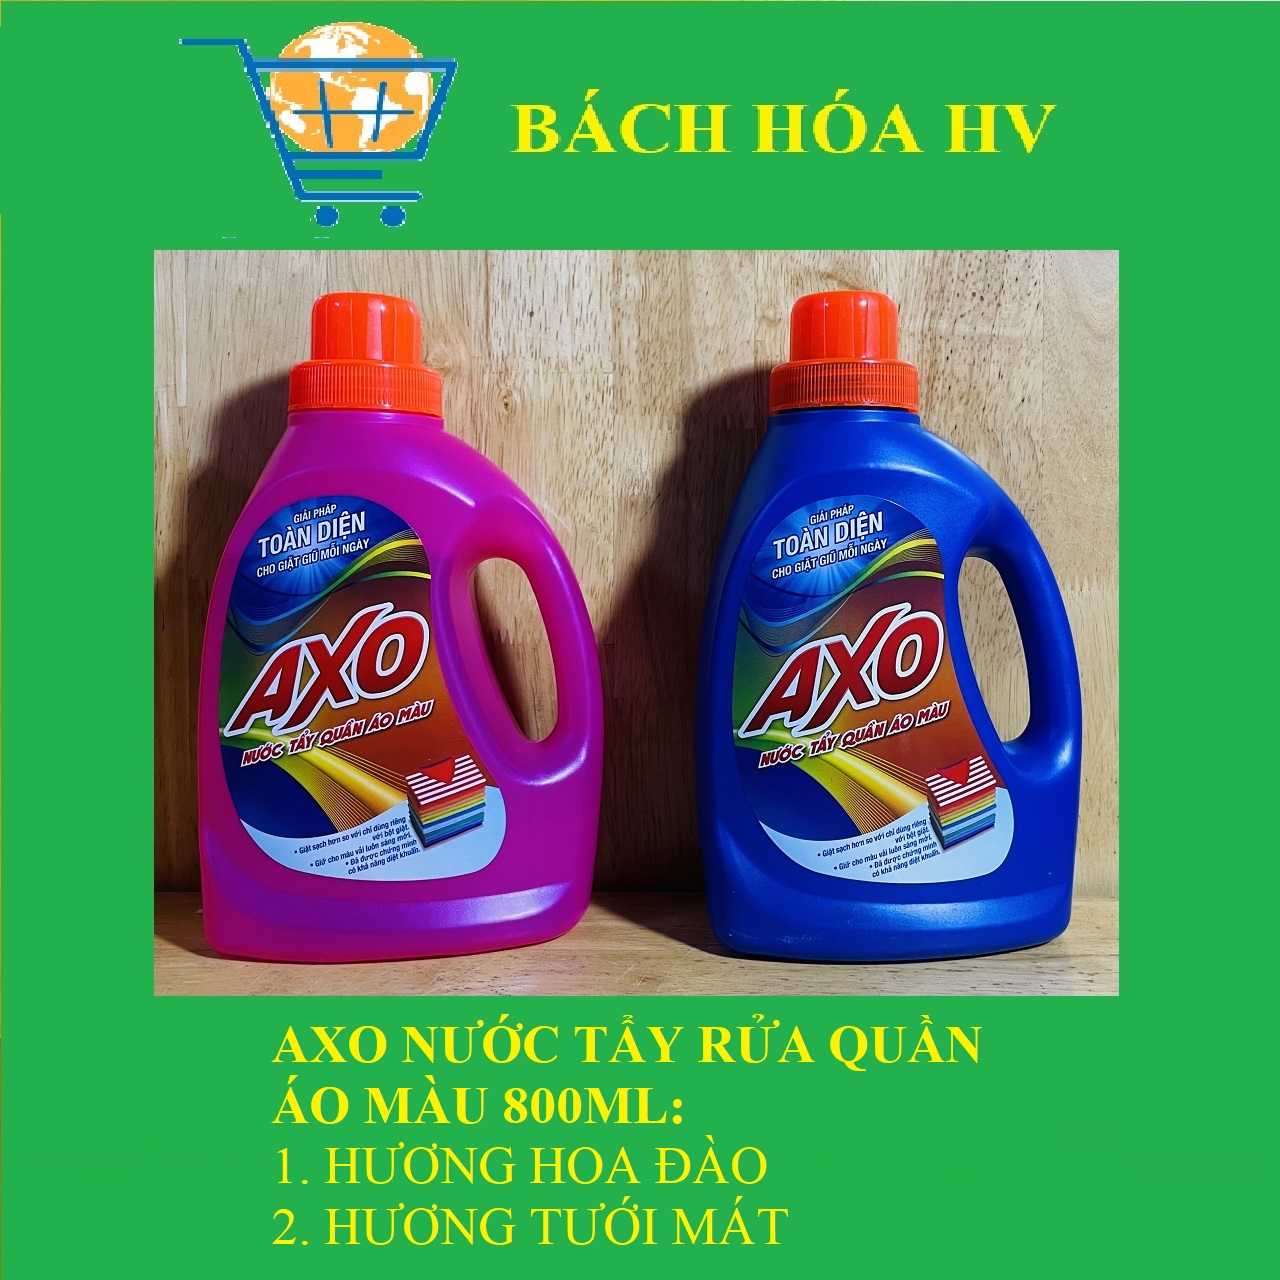 AXO Nước tẩy quần áo màu 800ml - BACH HOA HV